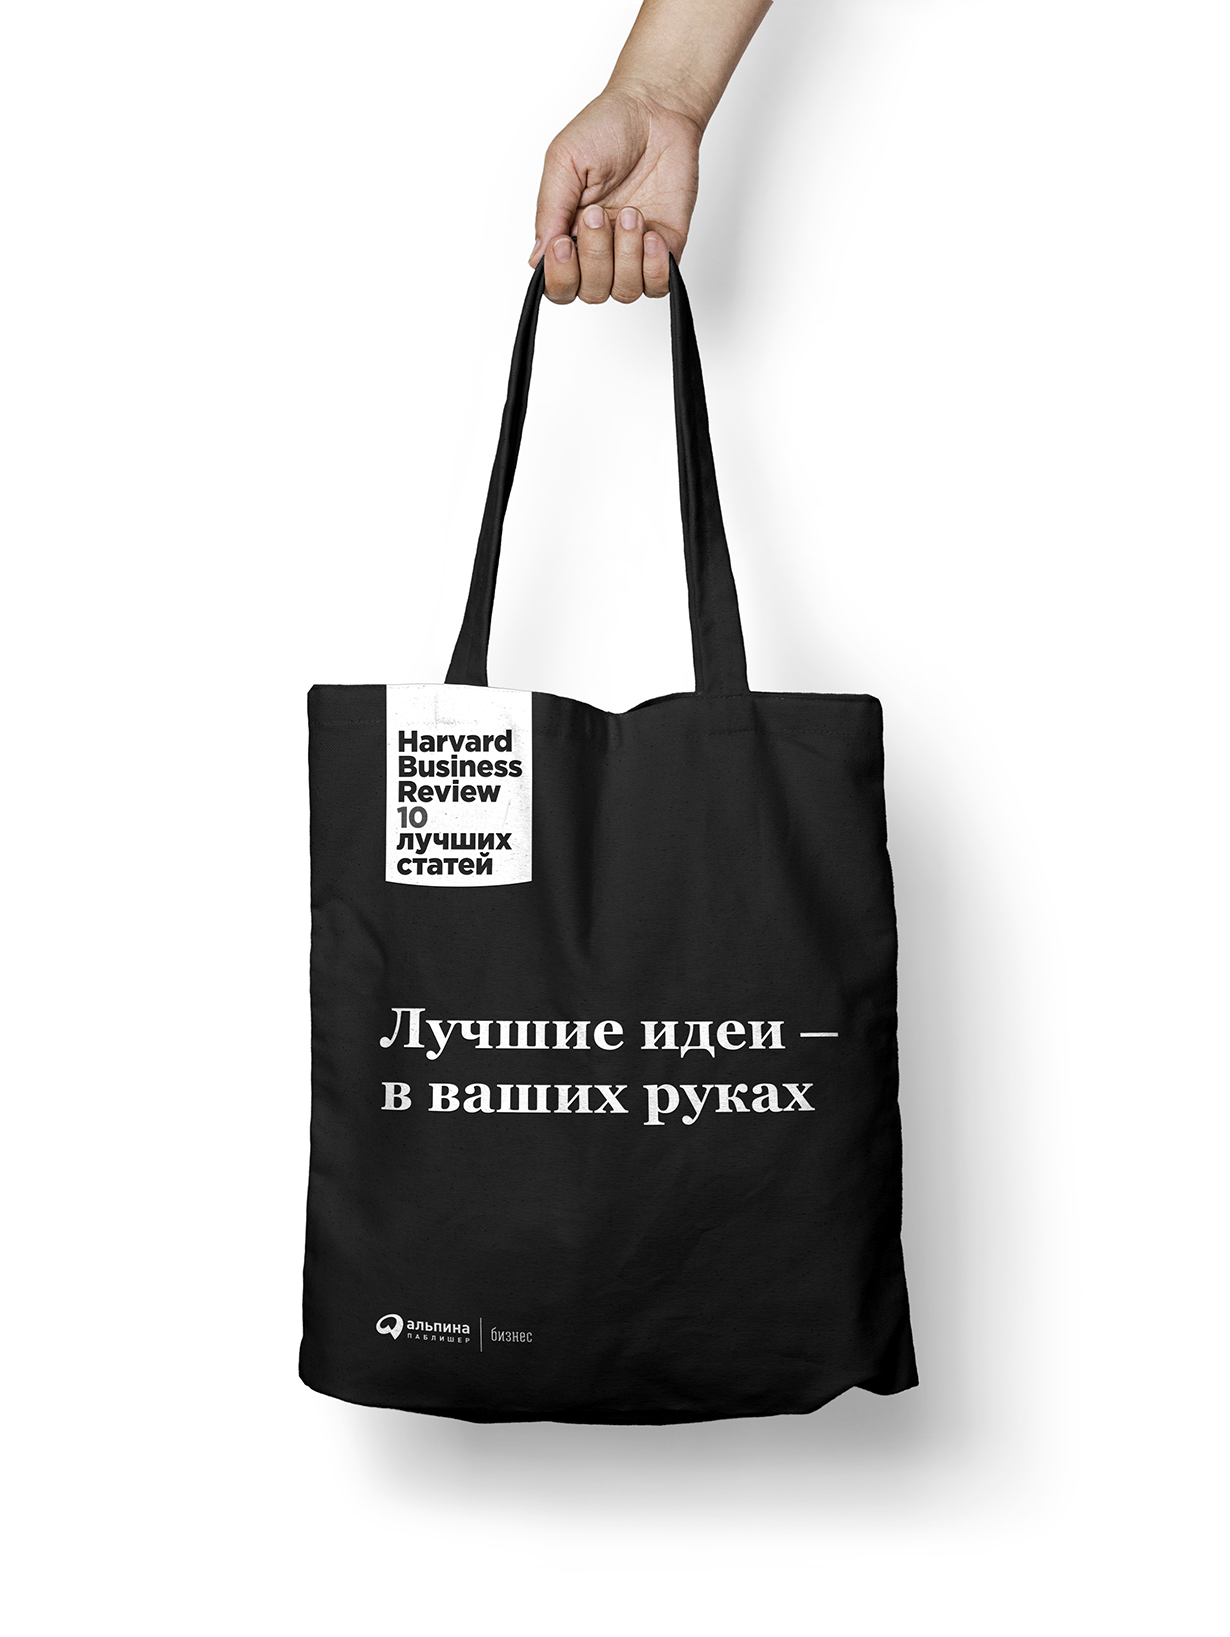 Подарочная сумка HBR «Лучшие идеи в ваших руках» обложка.